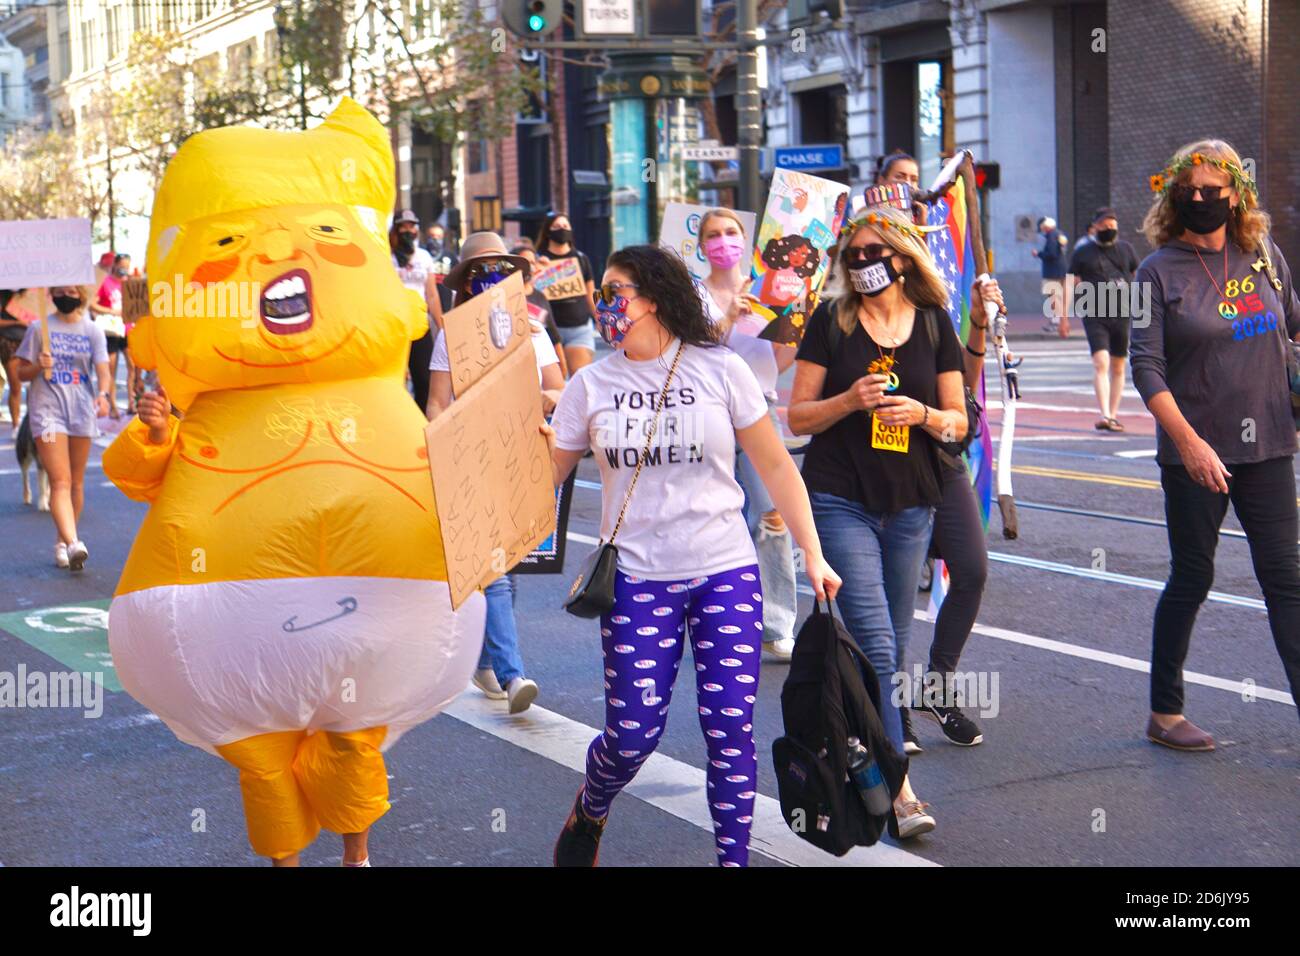 17 octobre 2020. San Francisco Marche des femmes après la mort de la juge de la Cour suprême Ruth Bader Ginsberg et avant l'élection présidentielle américaine. Banque D'Images